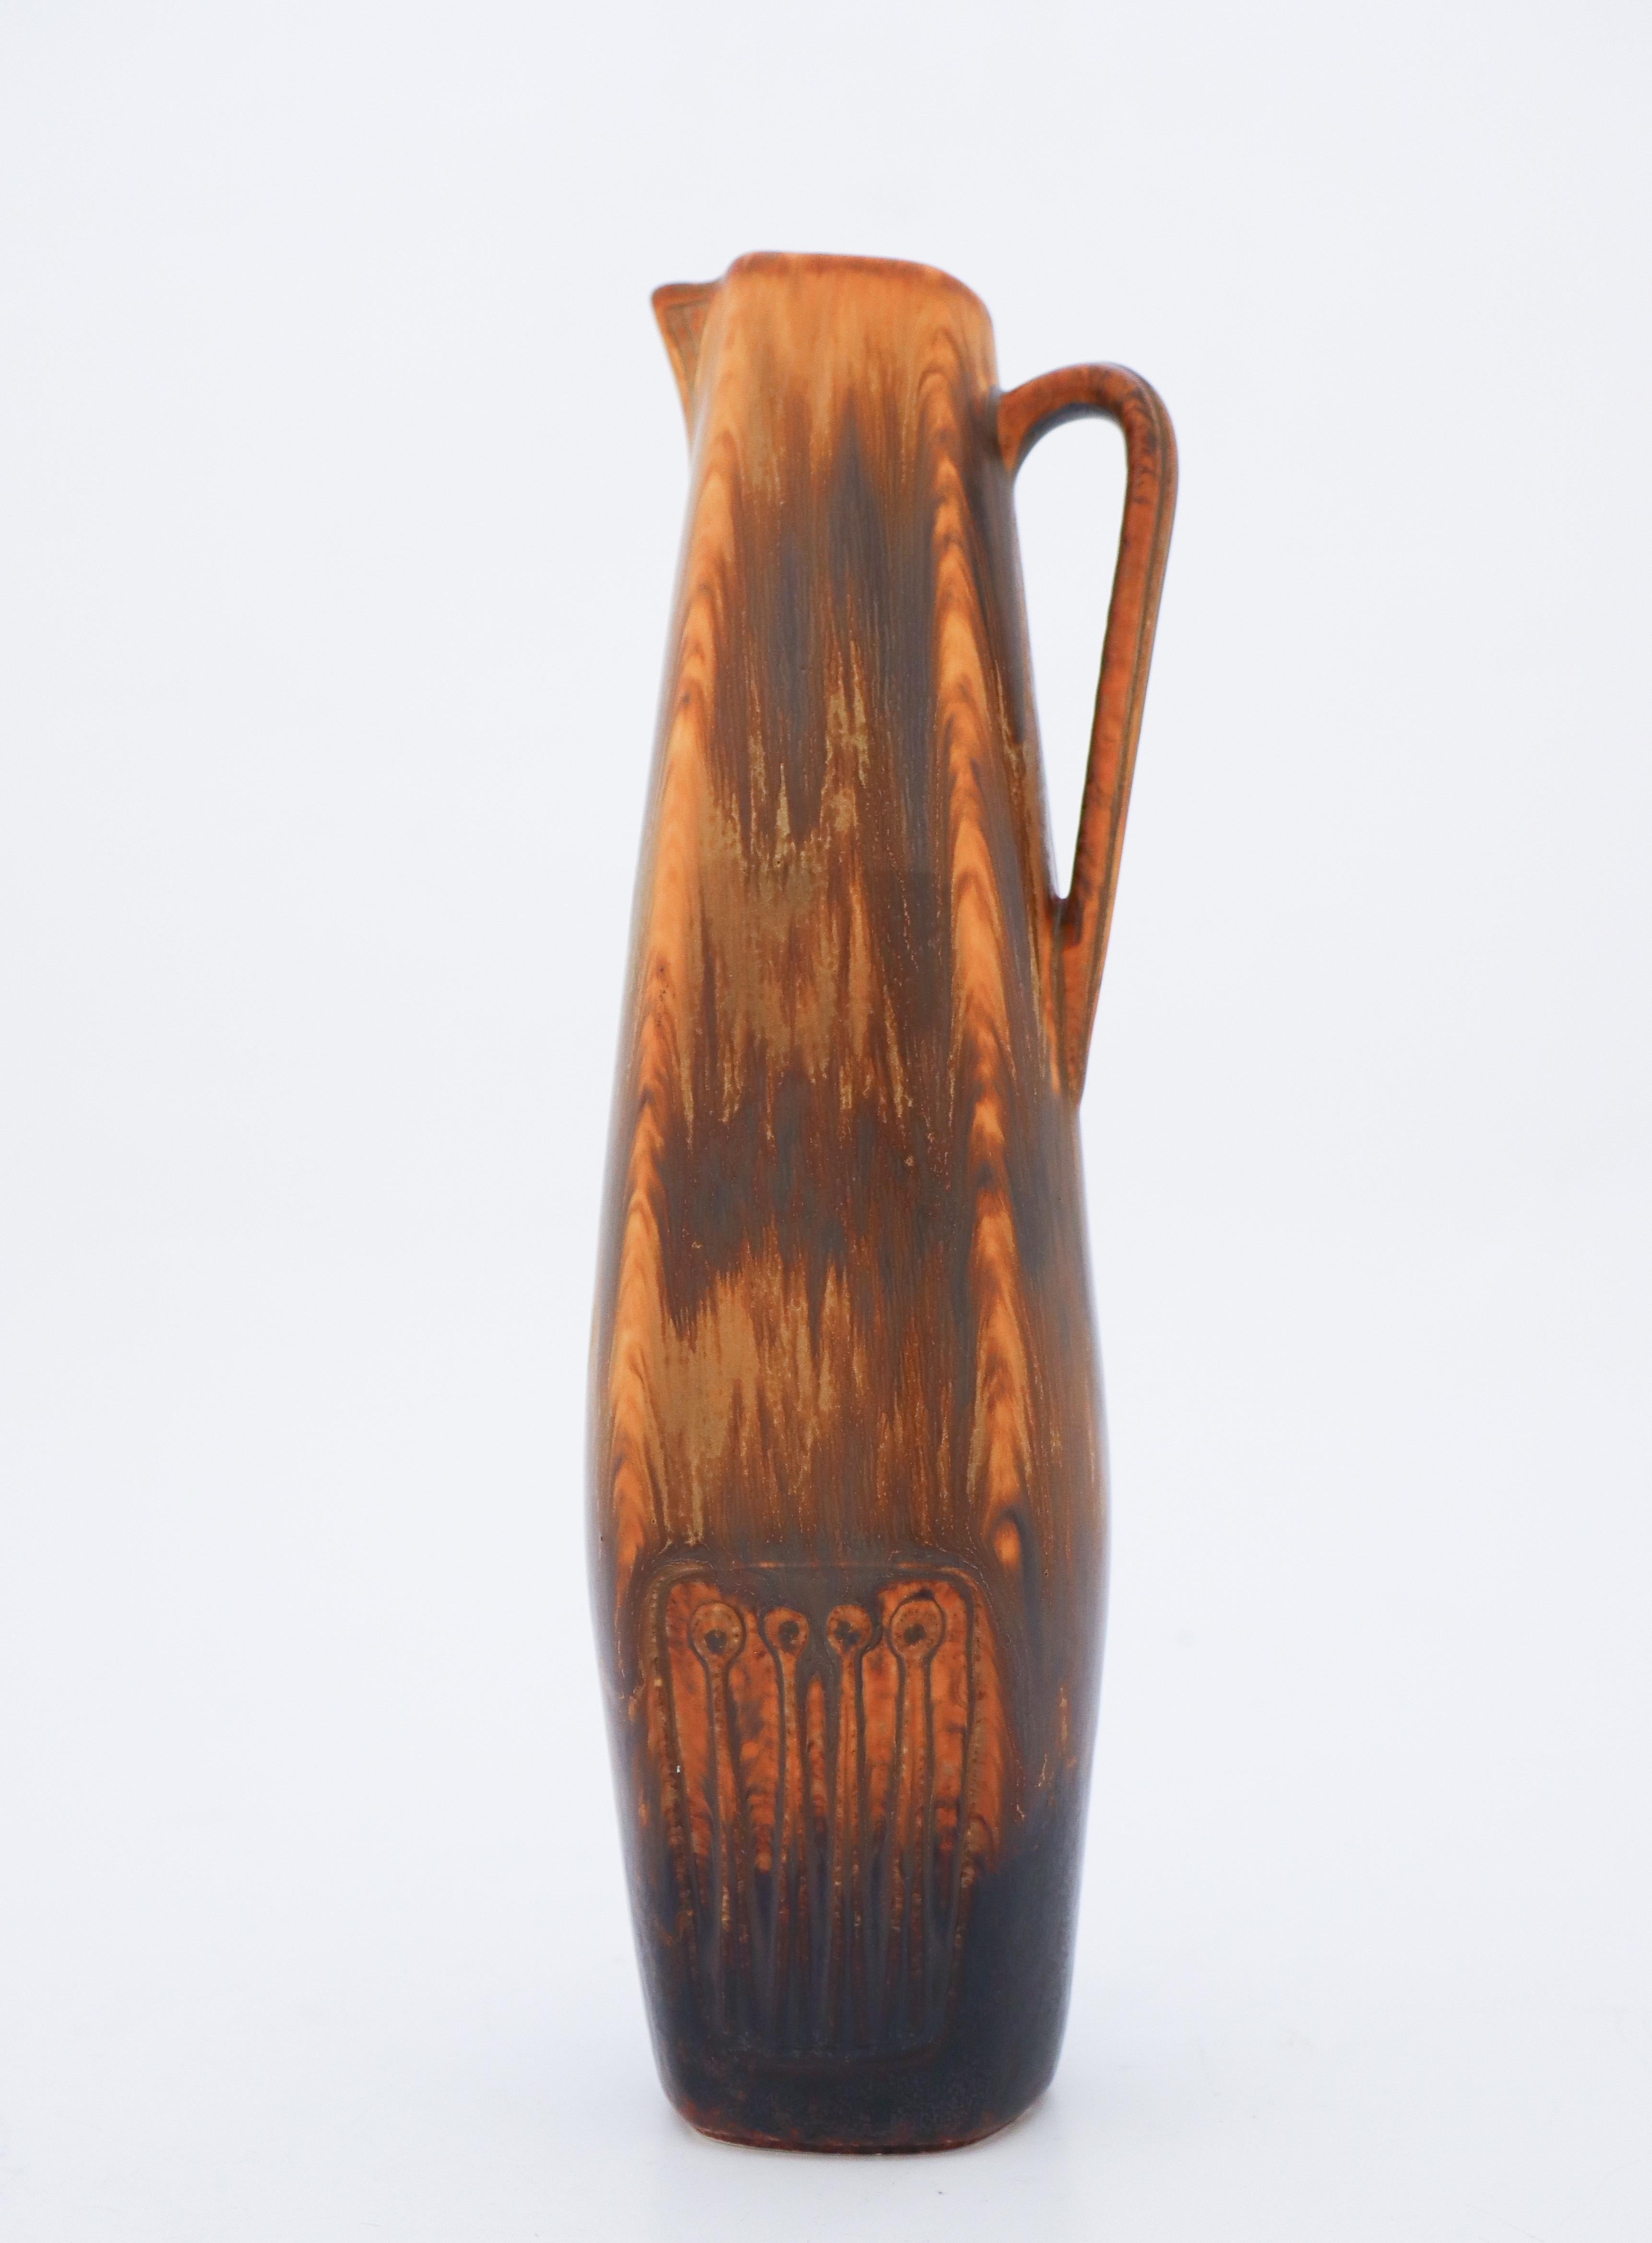 Die braune Vase wurde von Gunnar Nylund bei Rörstrand entworfen und ist 26,5 cm (10,6) hoch. Es ist in nahezu neuwertigem Zustand und als 1:st-Qualität gekennzeichnet. 

Gunnar Nylund wurde 1904 in Paris geboren. Seine Eltern arbeiteten als